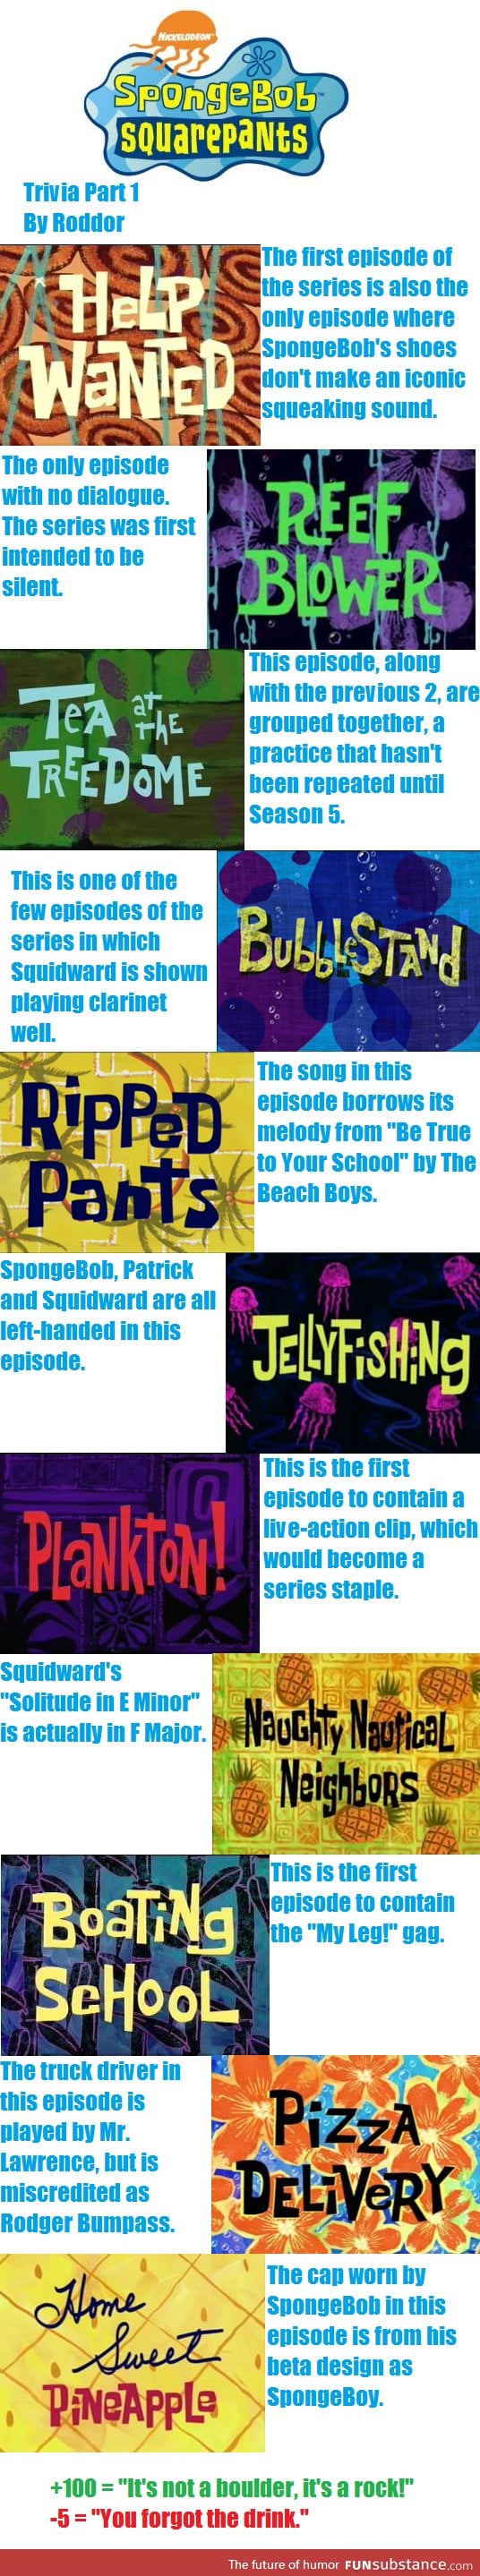 SpongeComp FactPants Volume 1